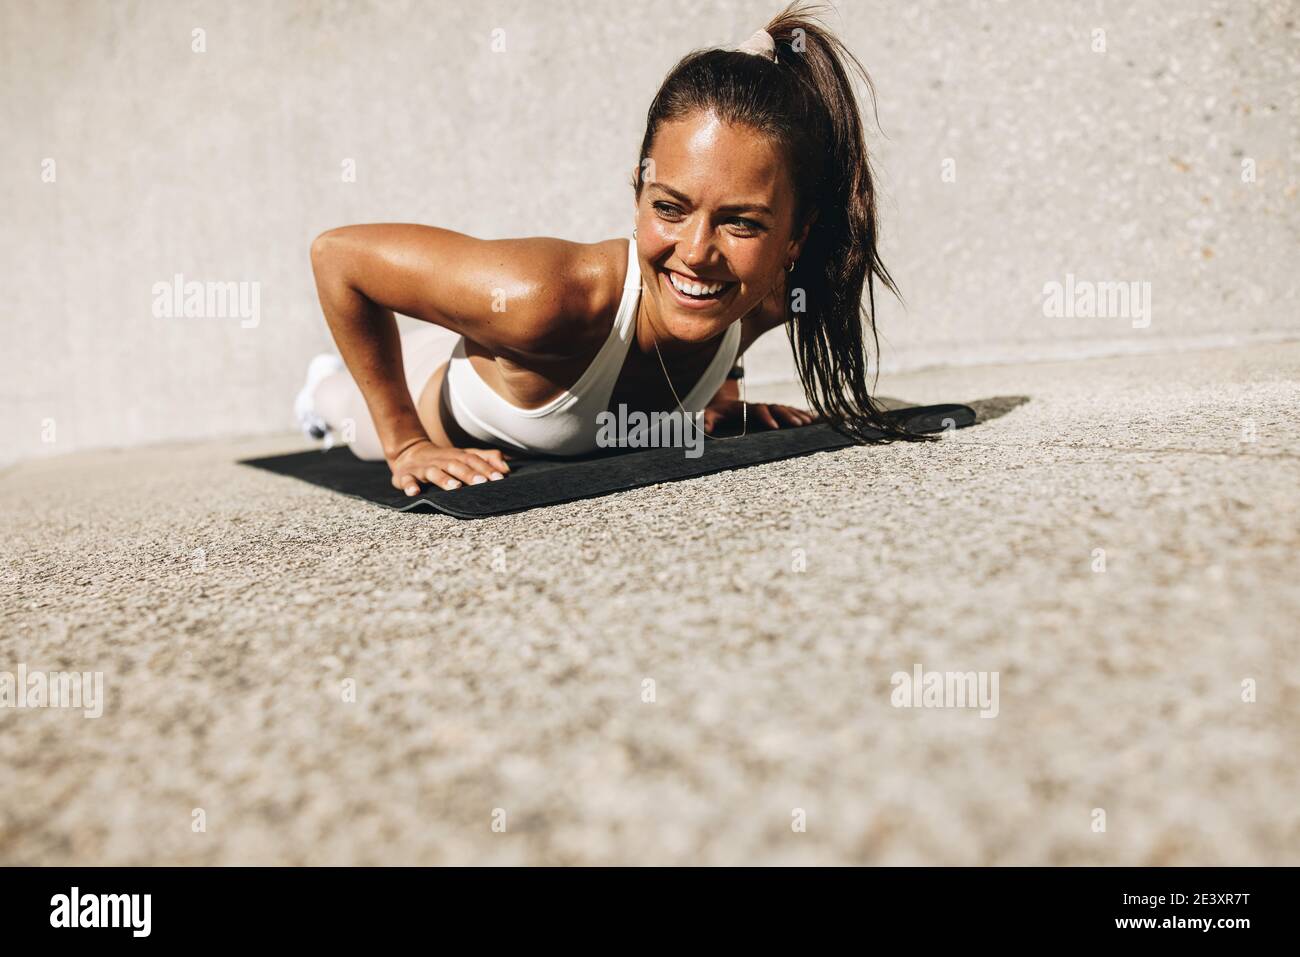 Frau tun Liegestütze auf Übungsmatte. Frau in Sportswear lächelt während ihres Workouts. Stockfoto